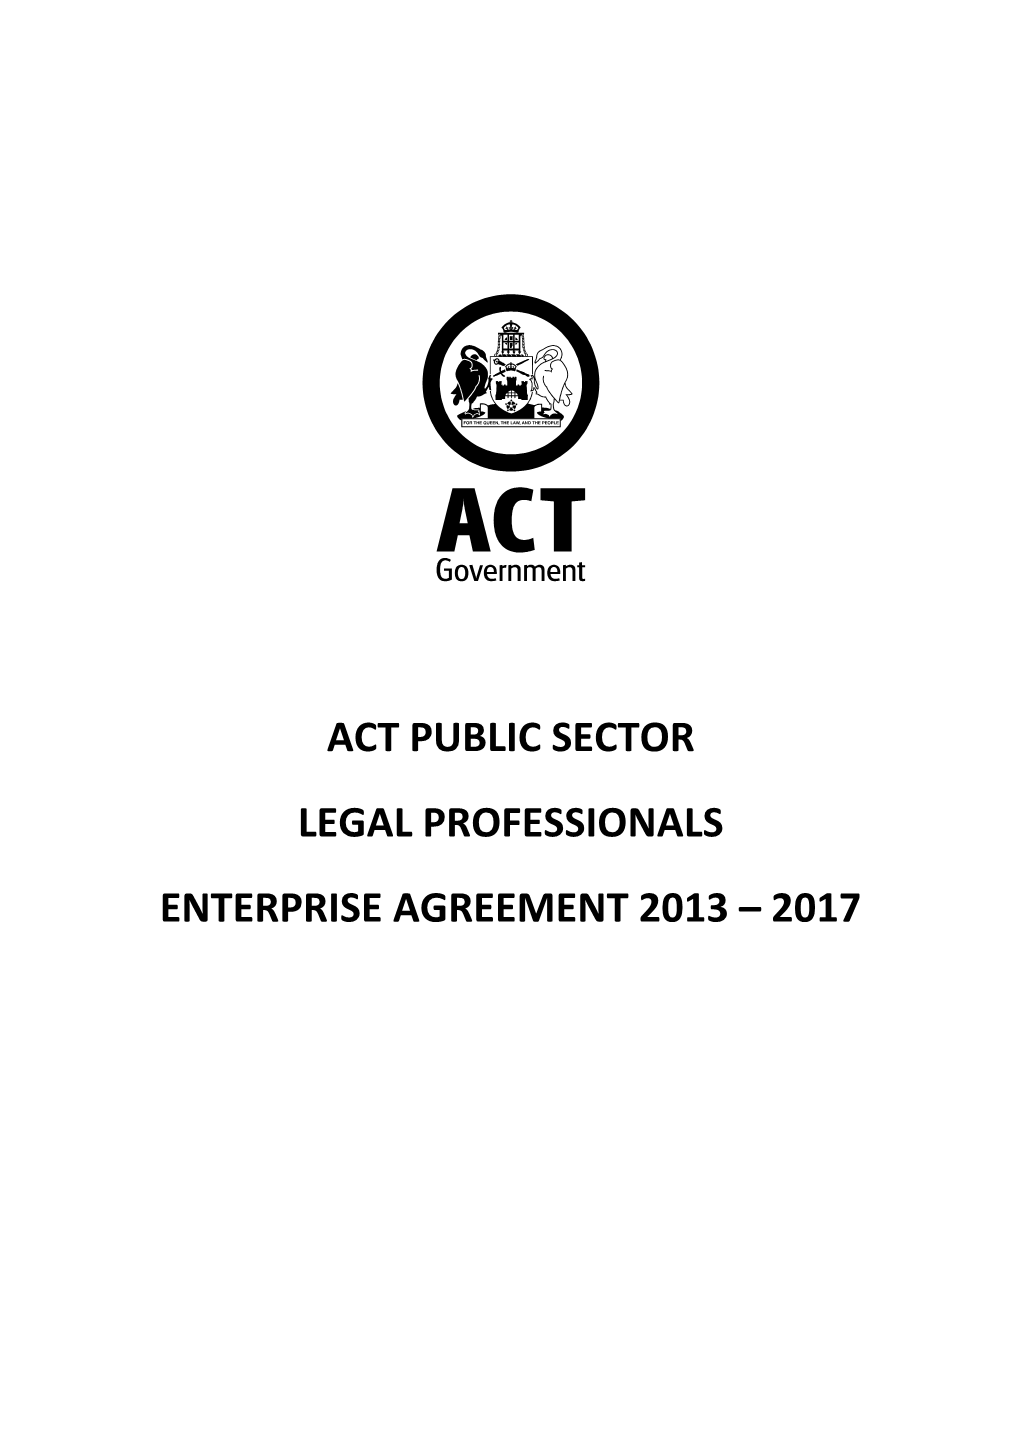 Act Public Sector Legal Professionals Enterprise Agreement 2013 – 2017